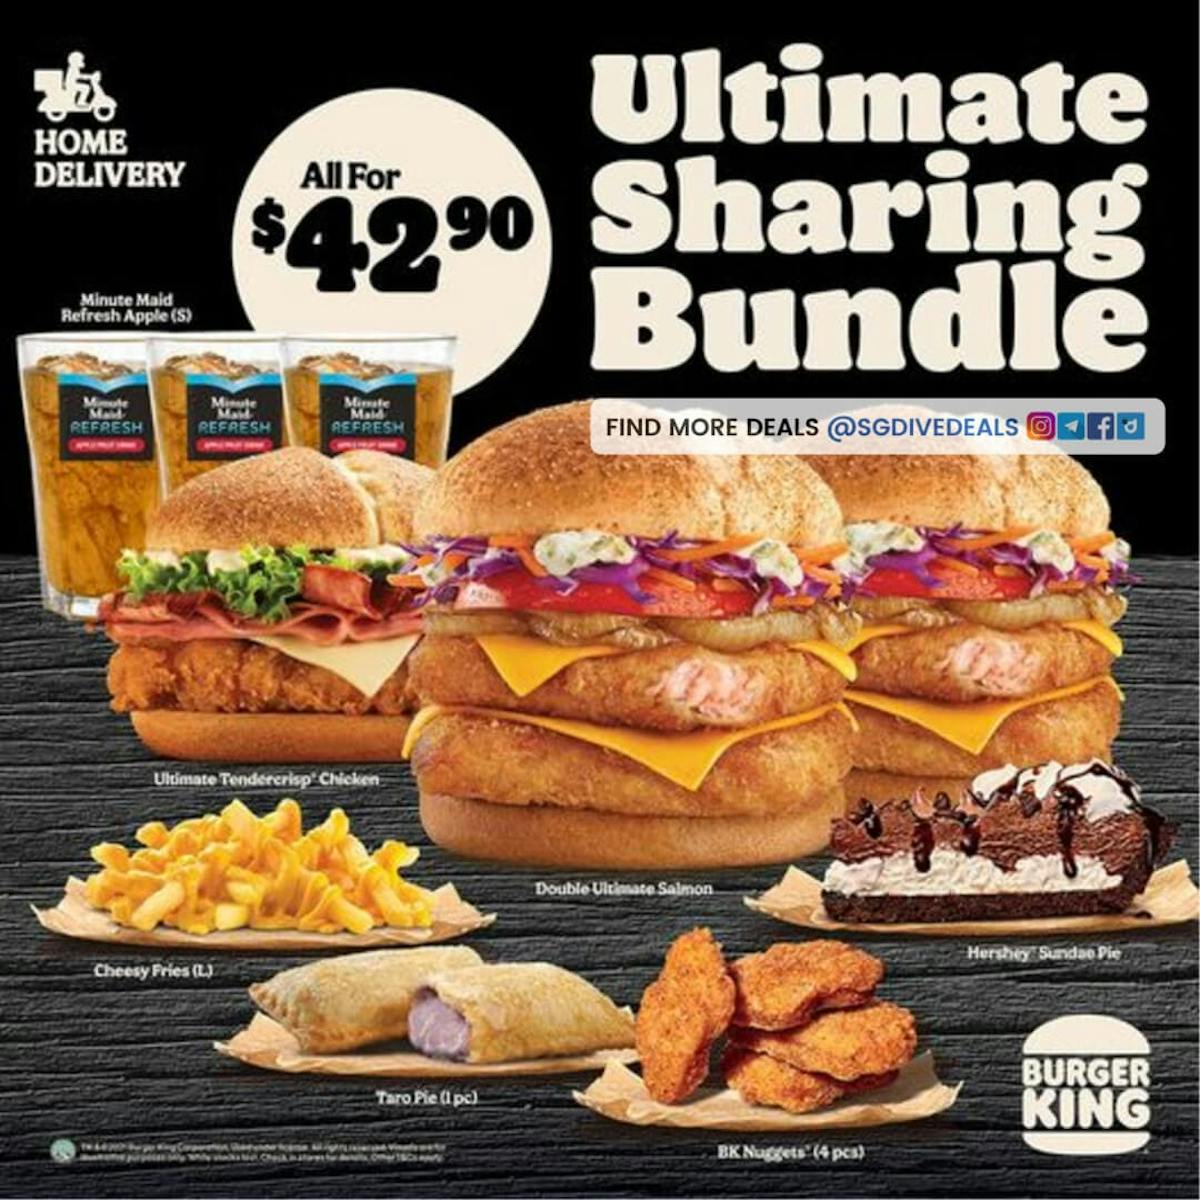 Burger King Ultimate Sharing Bundle Delivery Promo